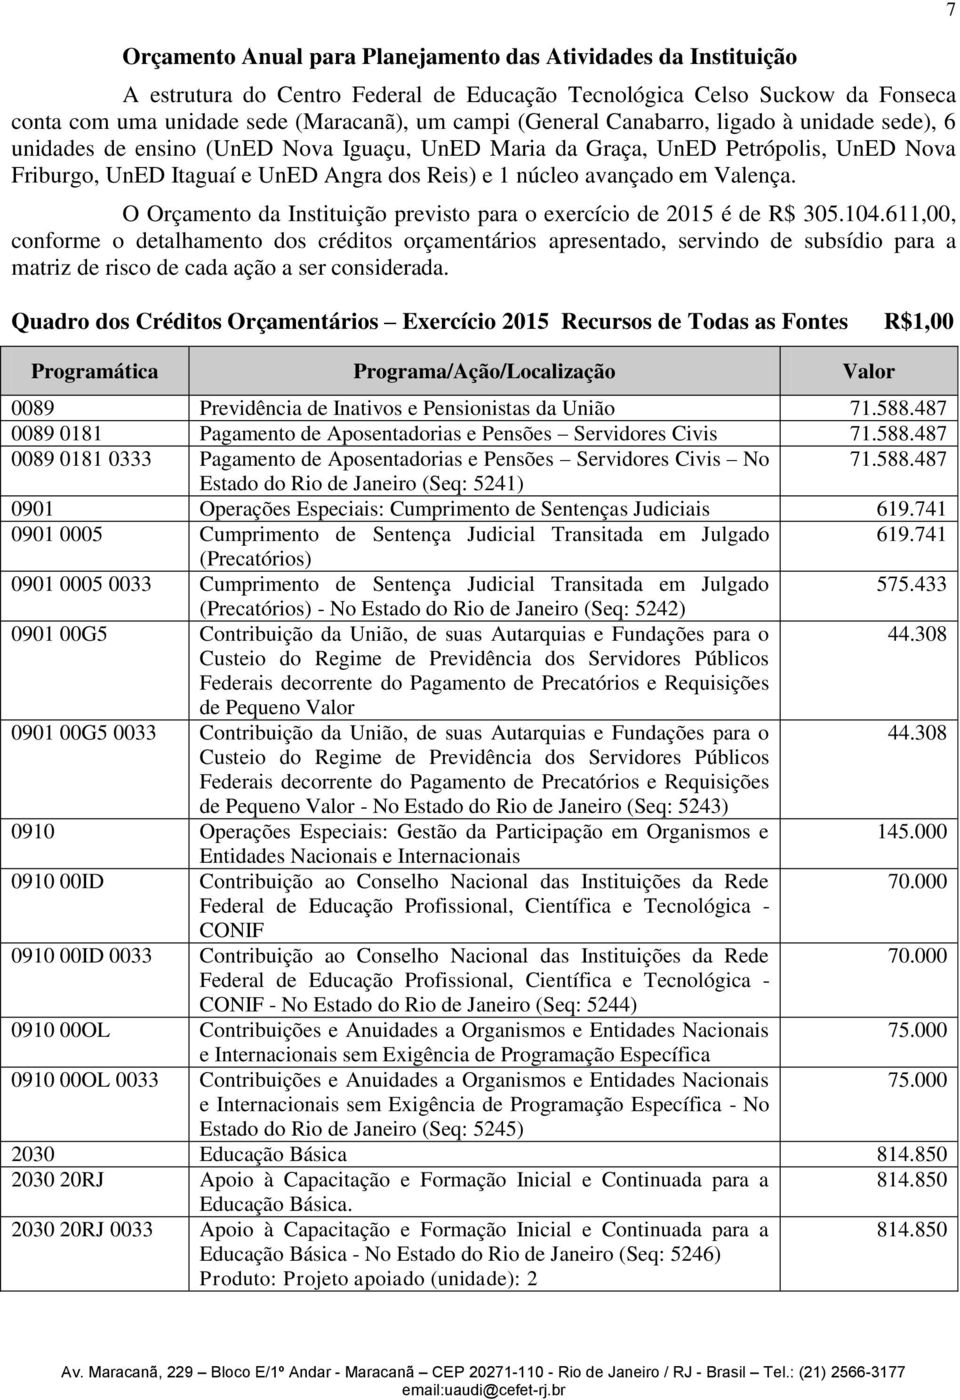 O Orçamento da Instituição previsto para o exercício de 2015 é de R$ 305.104.